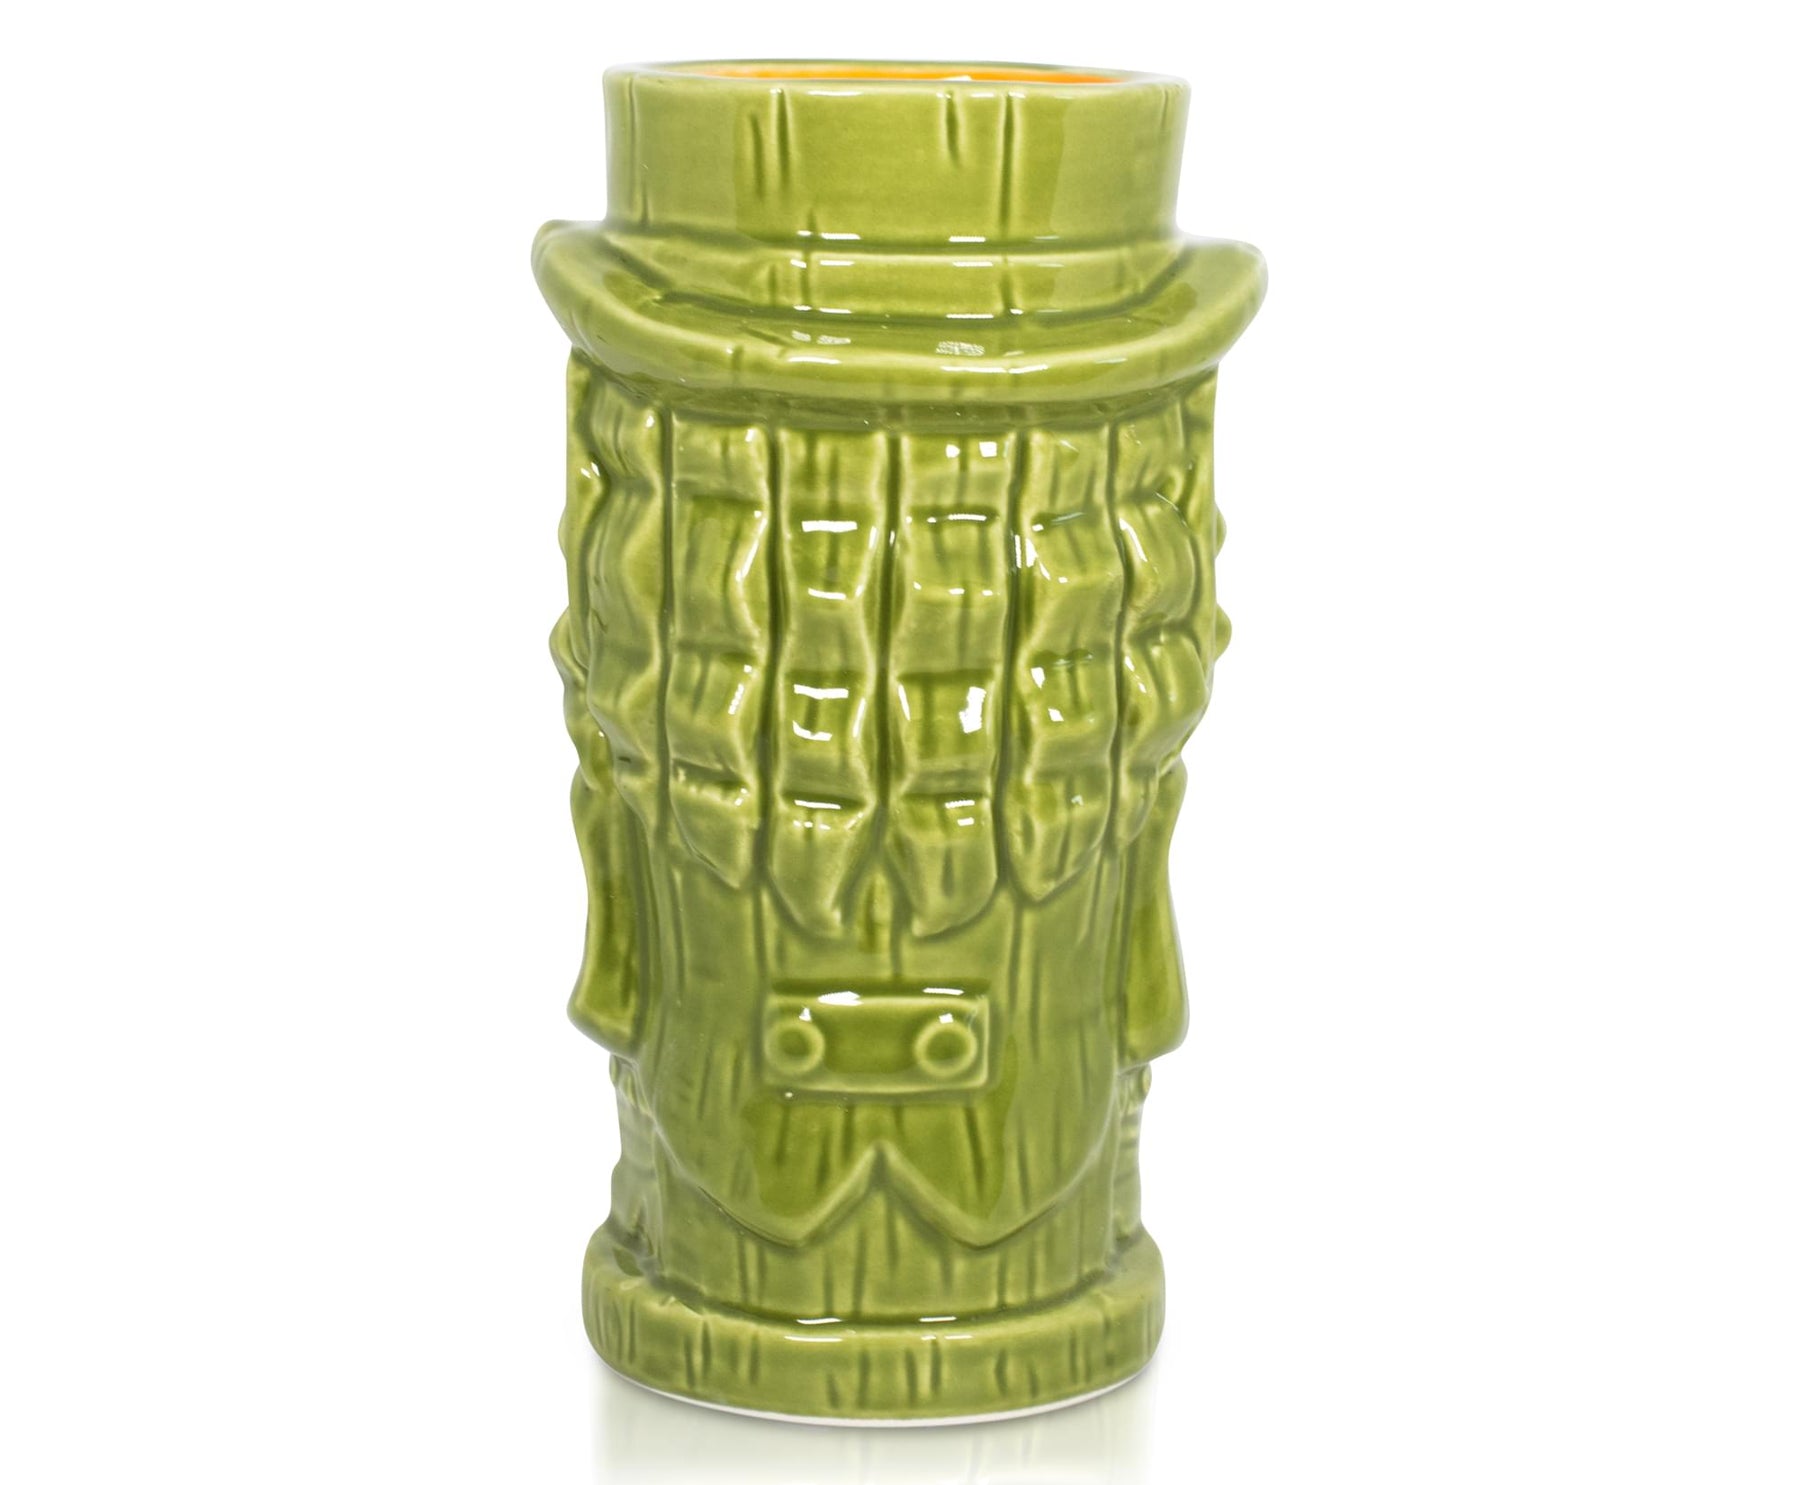 Geeki Tikis Leprechaun Movie Mug | Ceramic Tiki Style Cup | Holds 18 Ounces